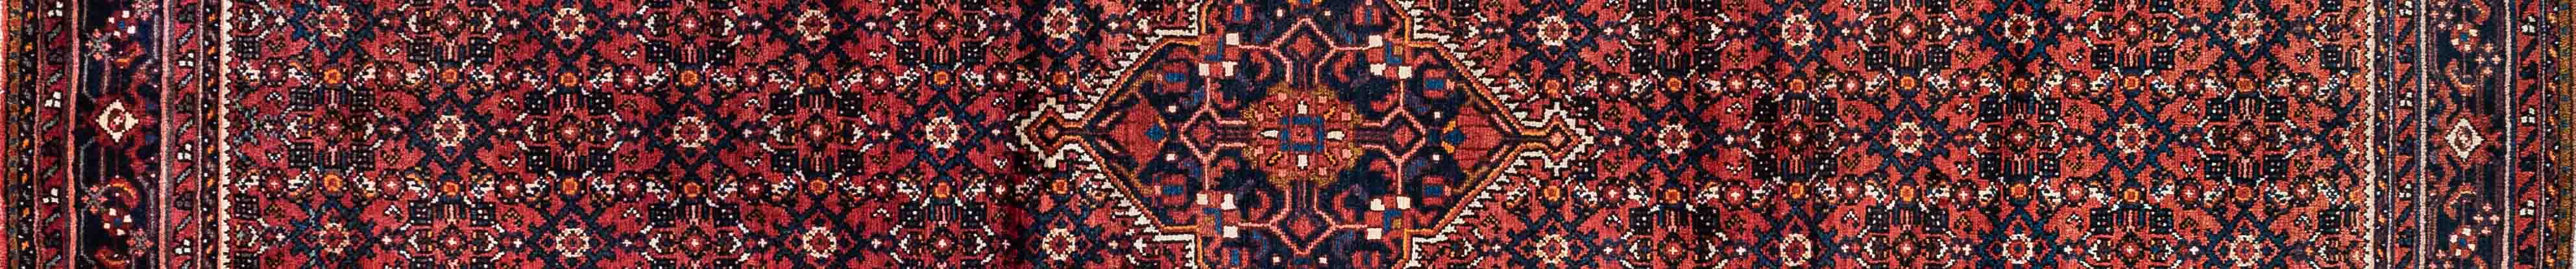 Hamadan Persian Carpet Rug N1Carpet Canada Montreal Tapis Persan 1450